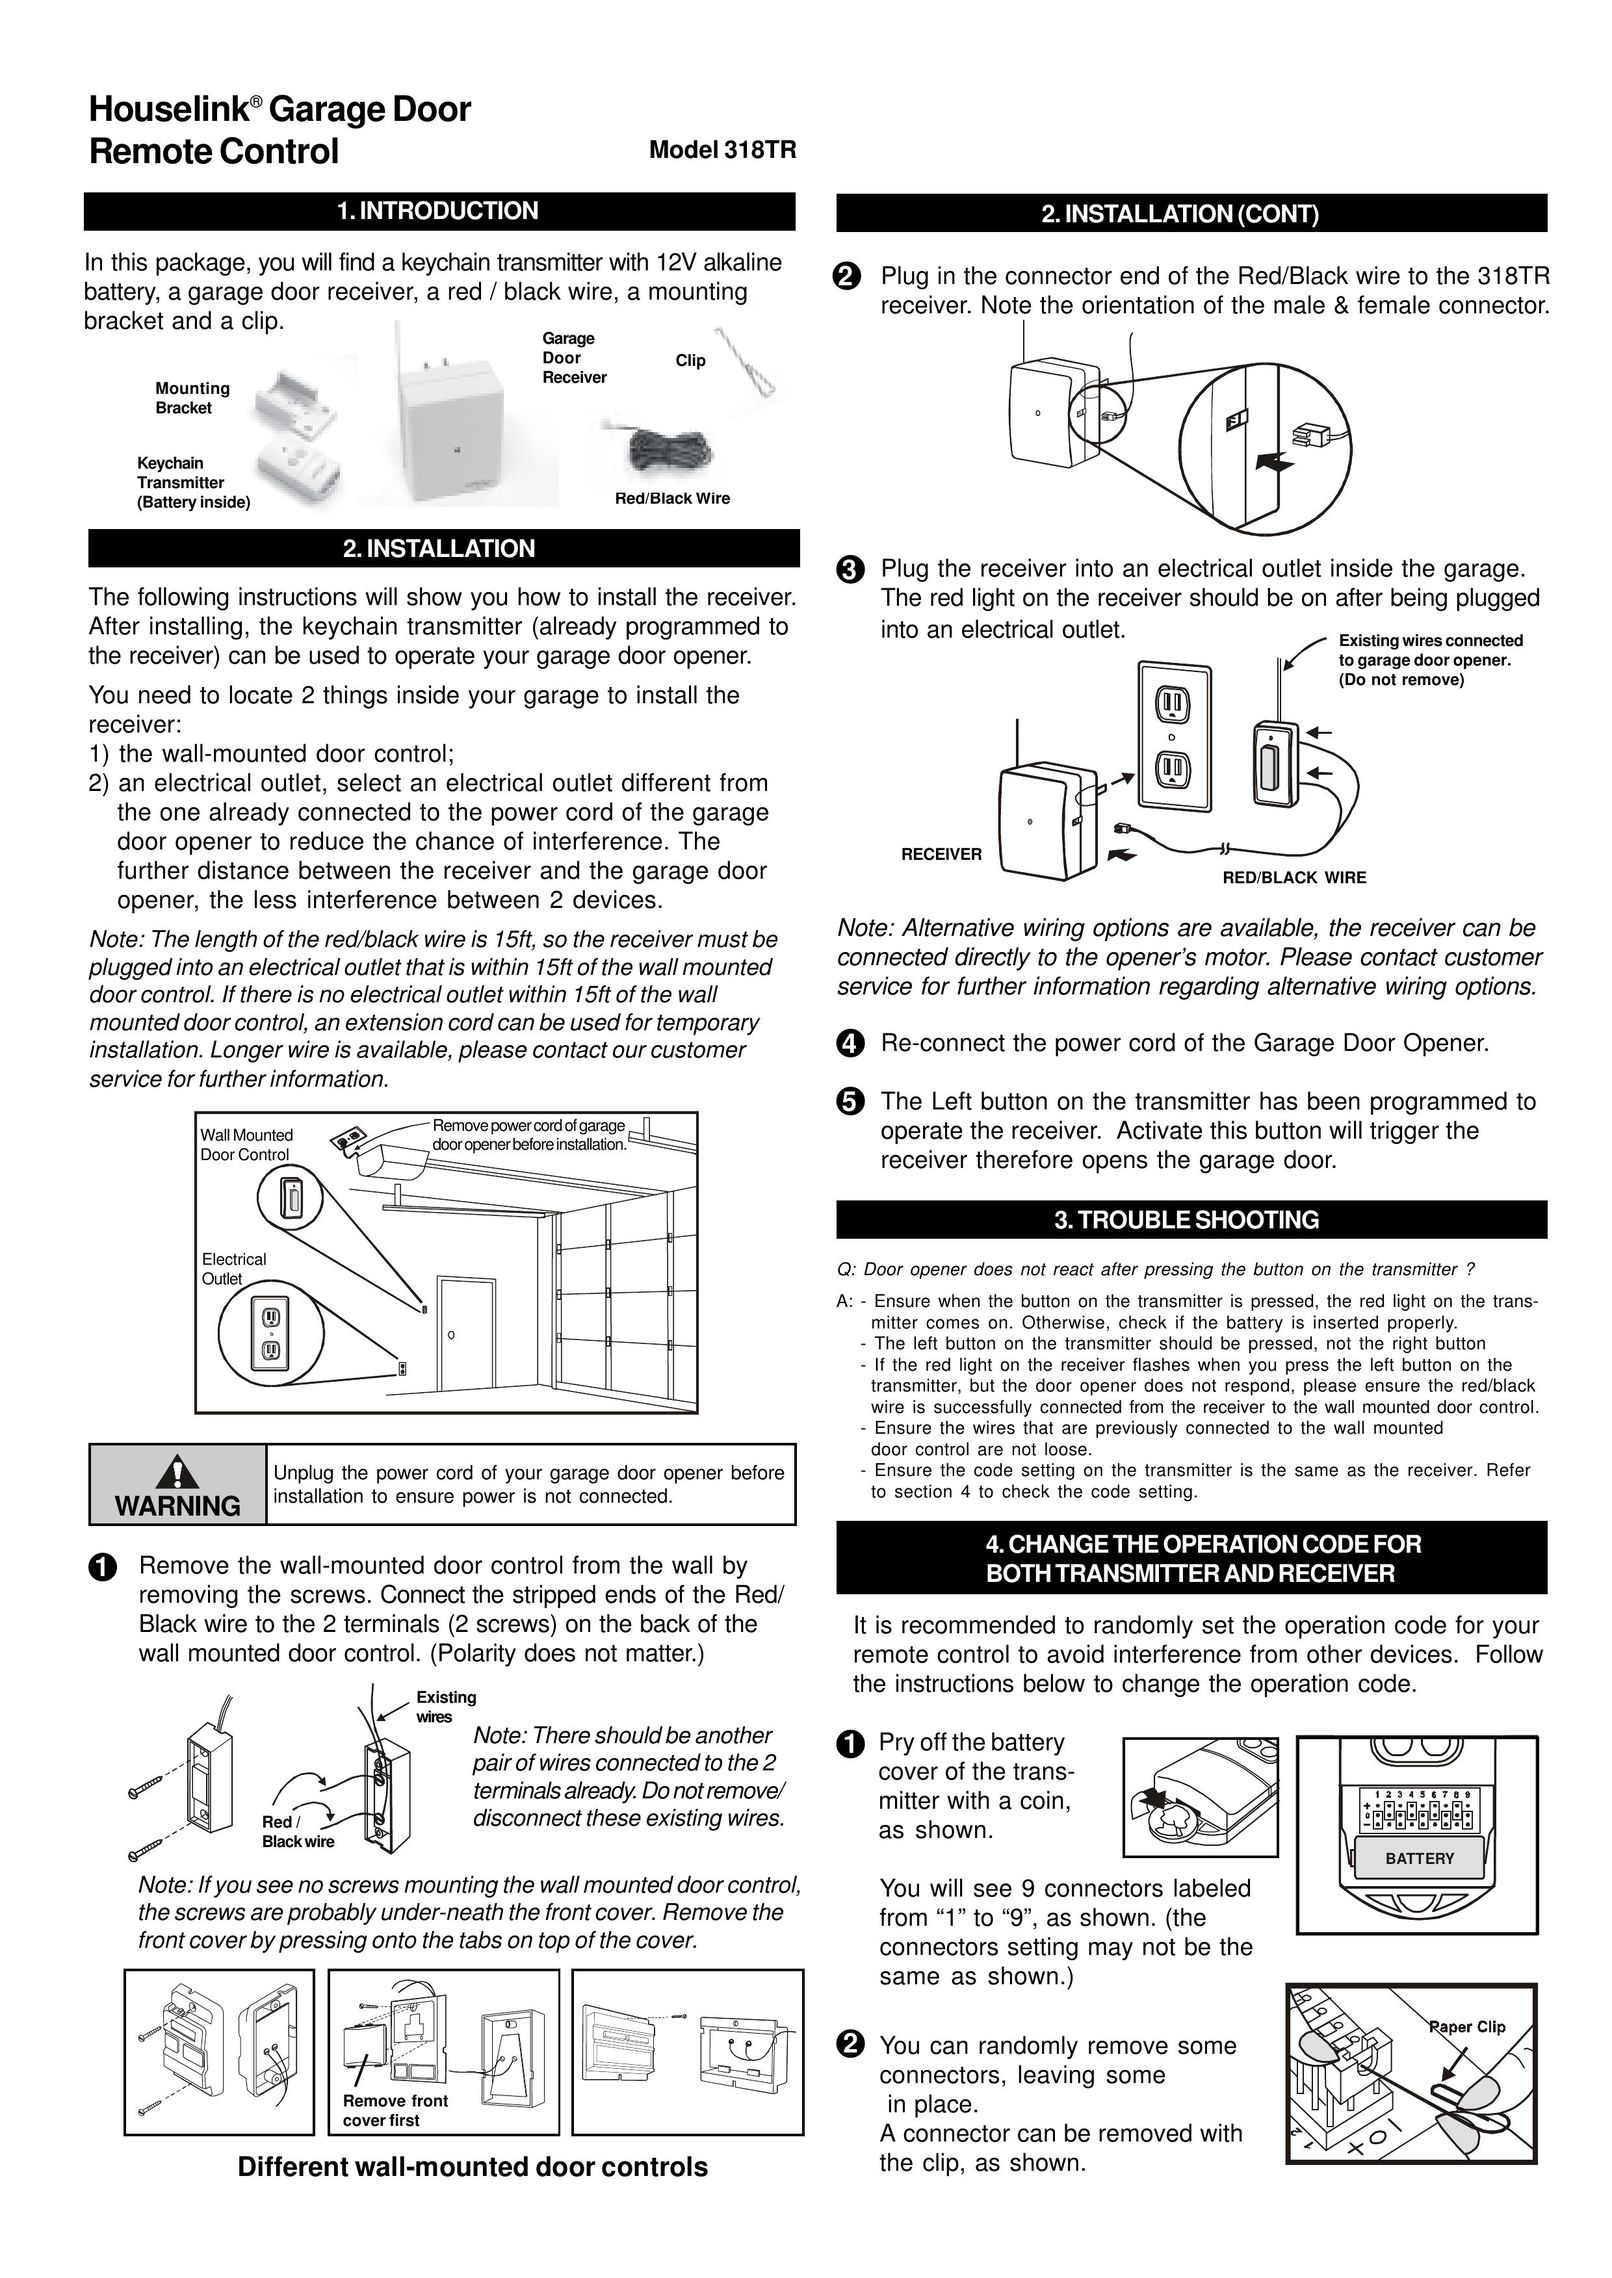 SkyLink 318TR Garage Door Opener User Manual